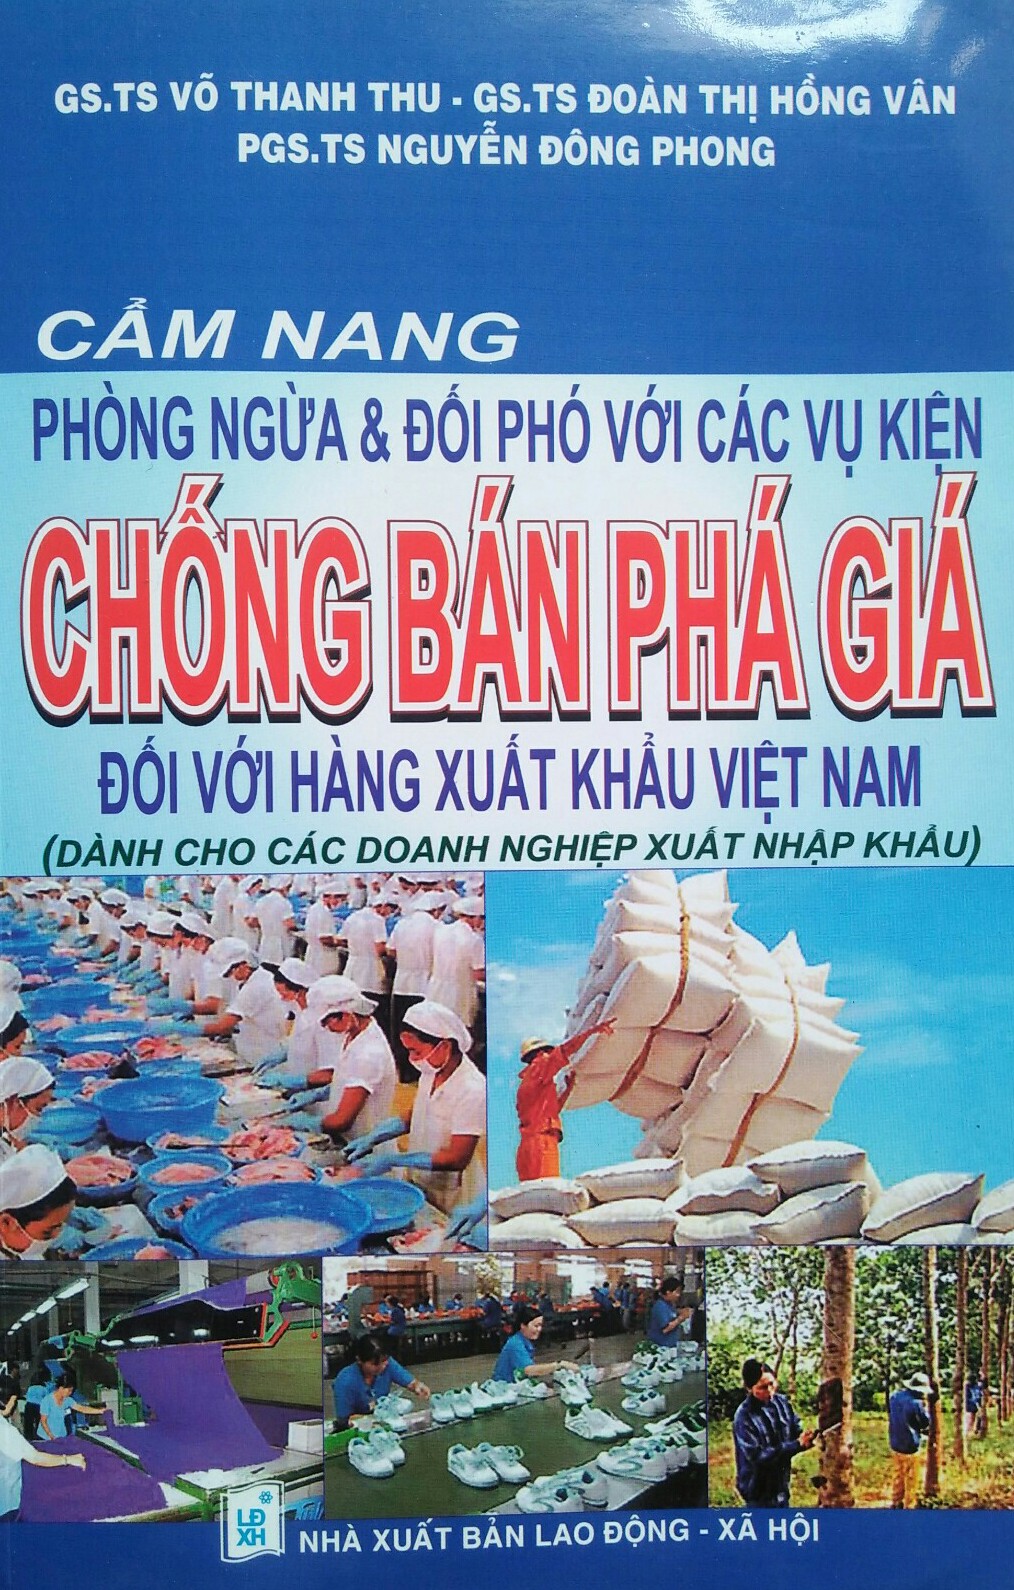 Các vụ kiện chống bán phá giá đối với hàng xuất khẩu Việt Nam 